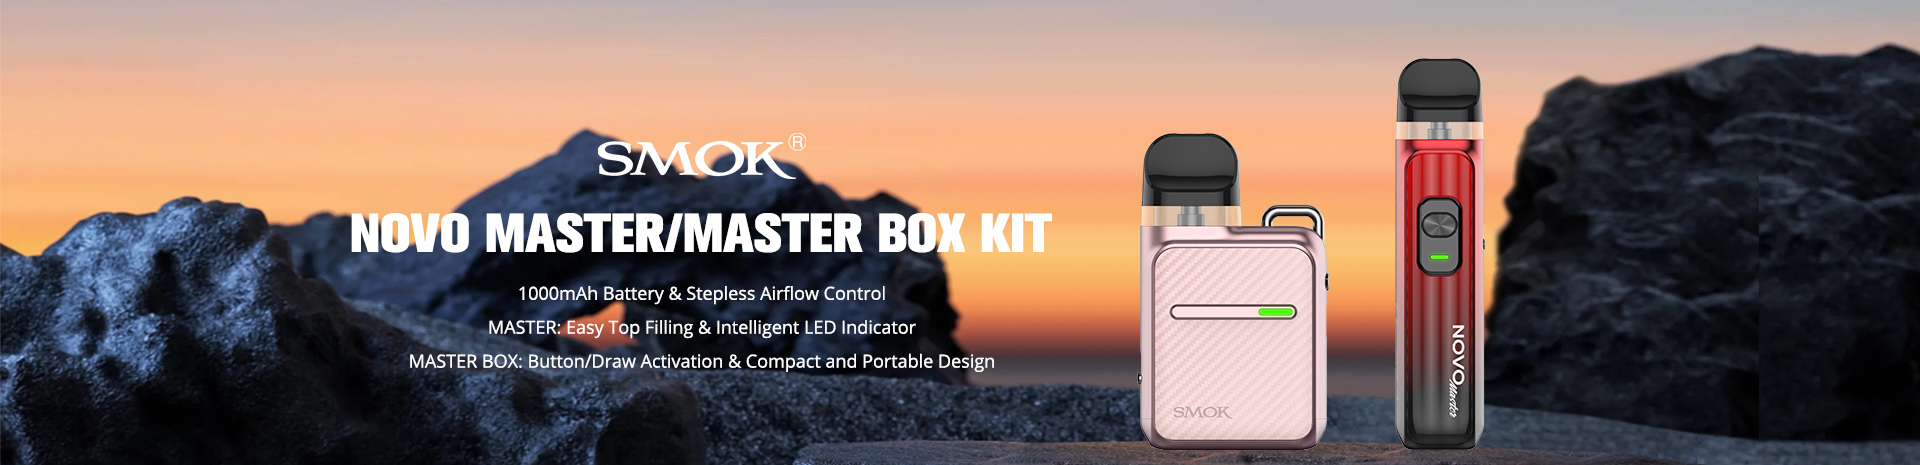 SMOK Novo Master Kit and SMOK Novo Master Box Kit